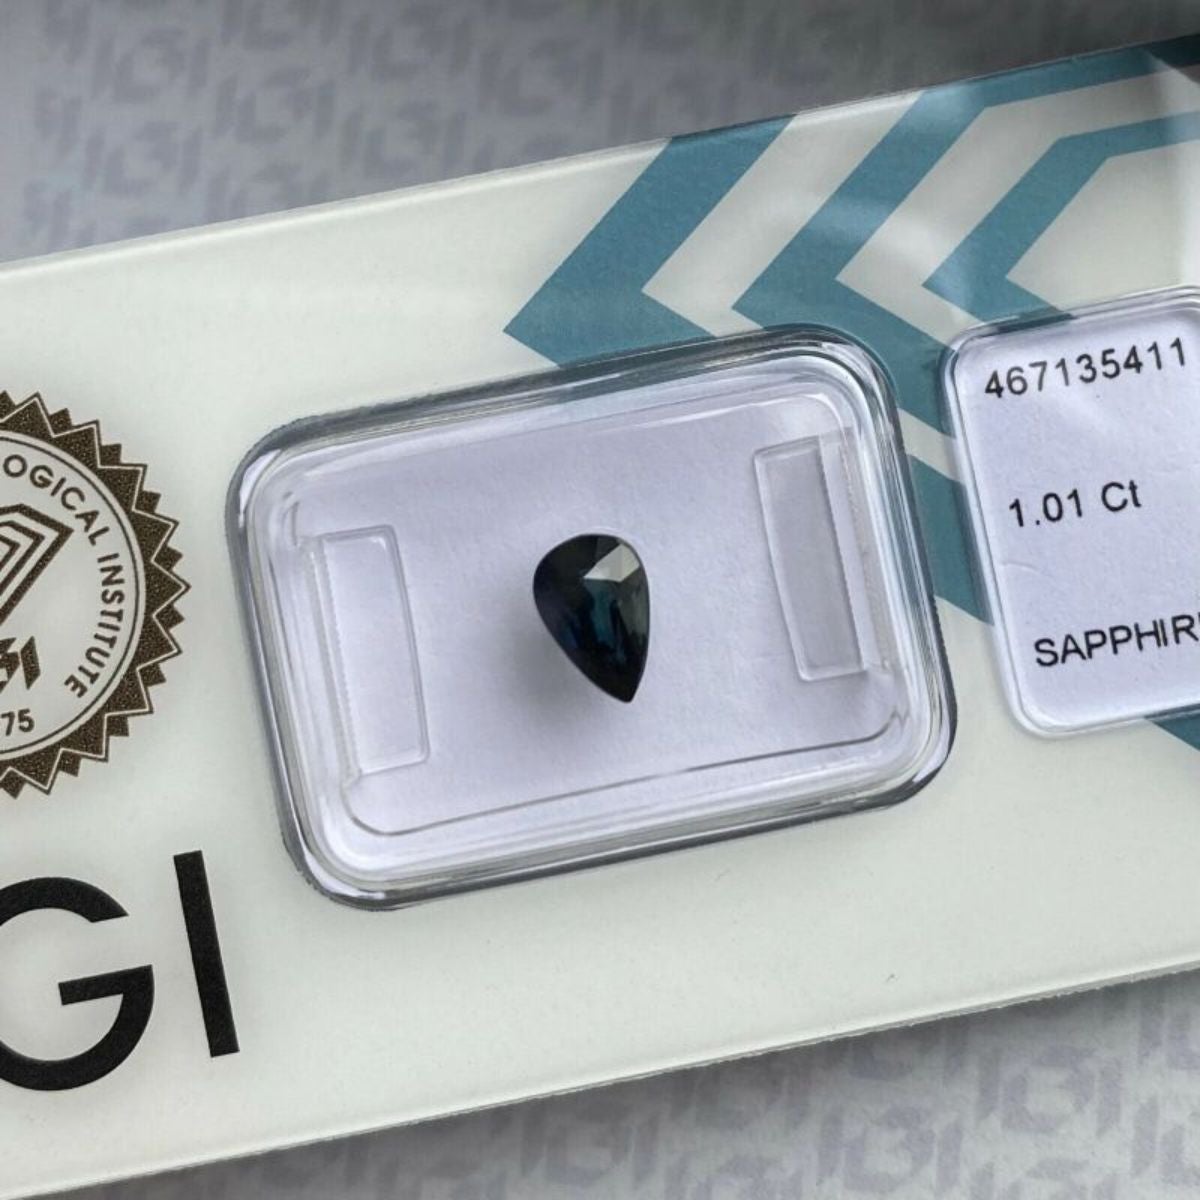 Fine saphir bleu foncé non traité taille poire en forme de goutte d'eau de 1,01 carat, certifié IGI